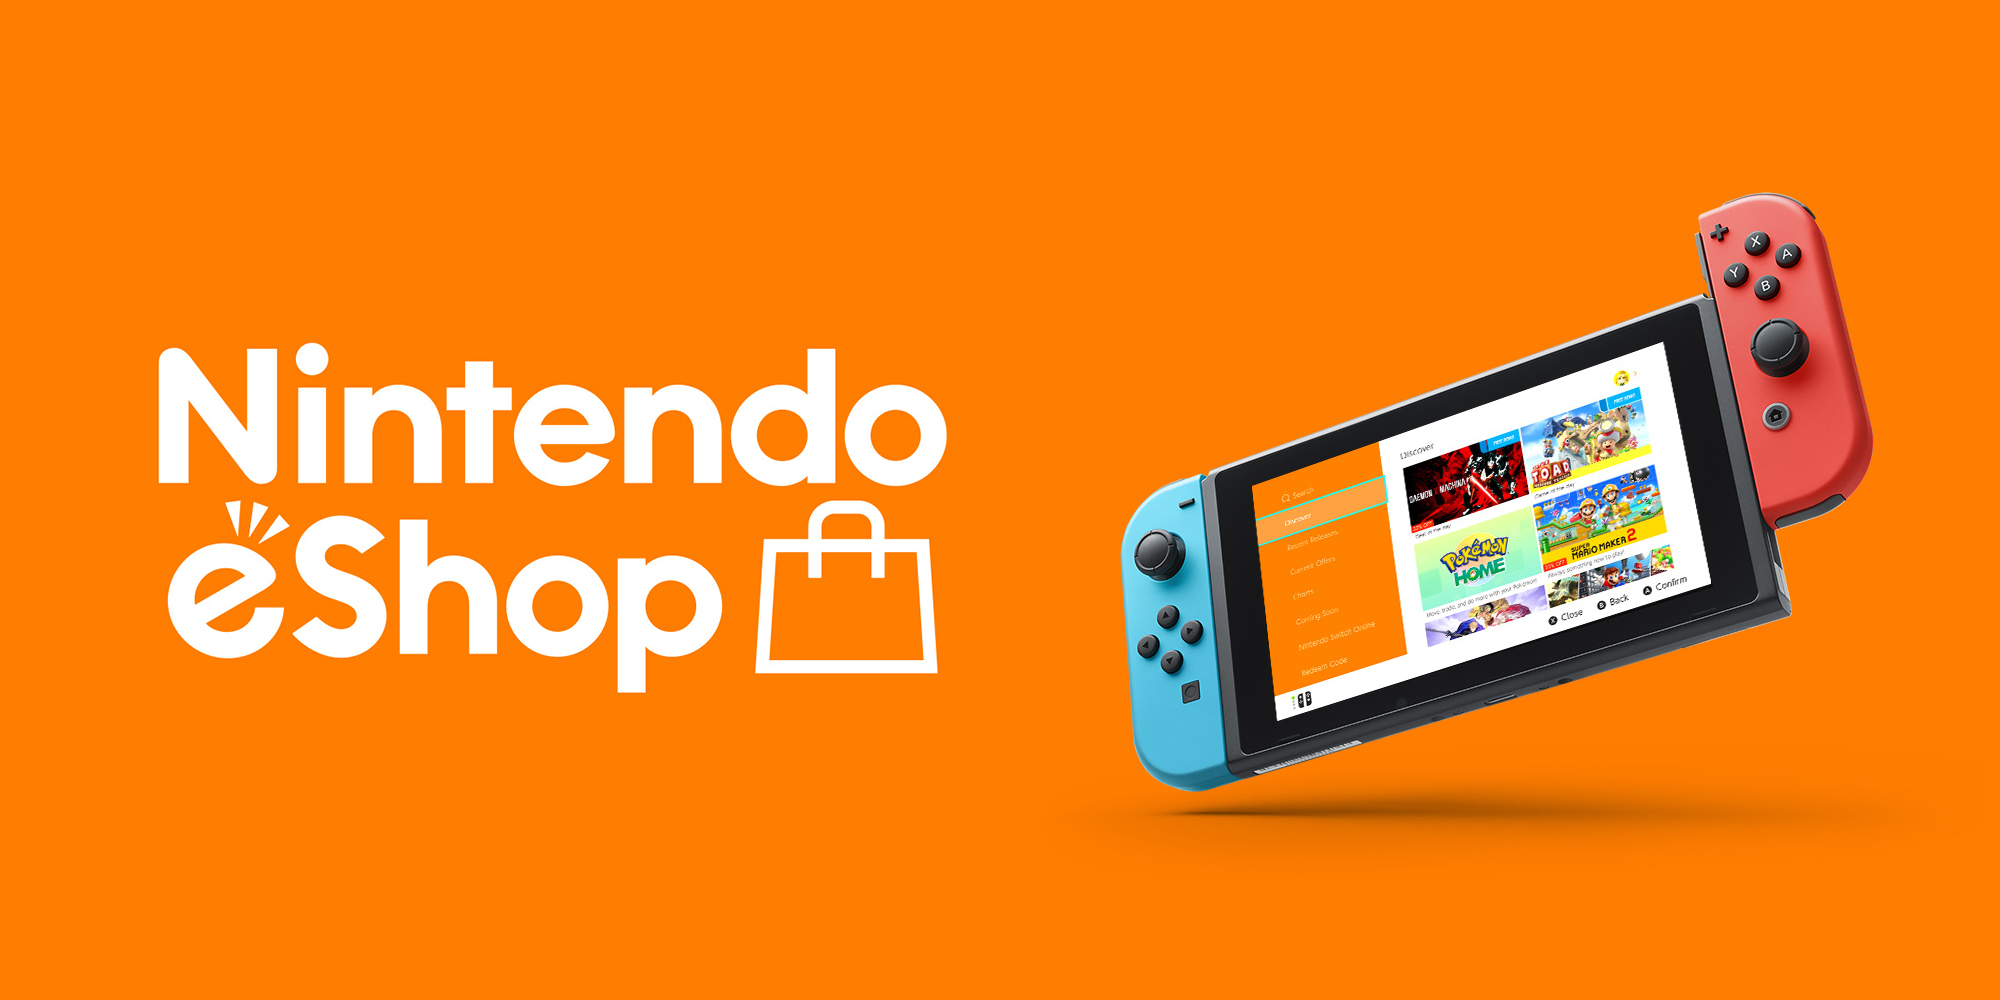 Nintendo eShop Prepaid Card $10 US Key 9.76 $